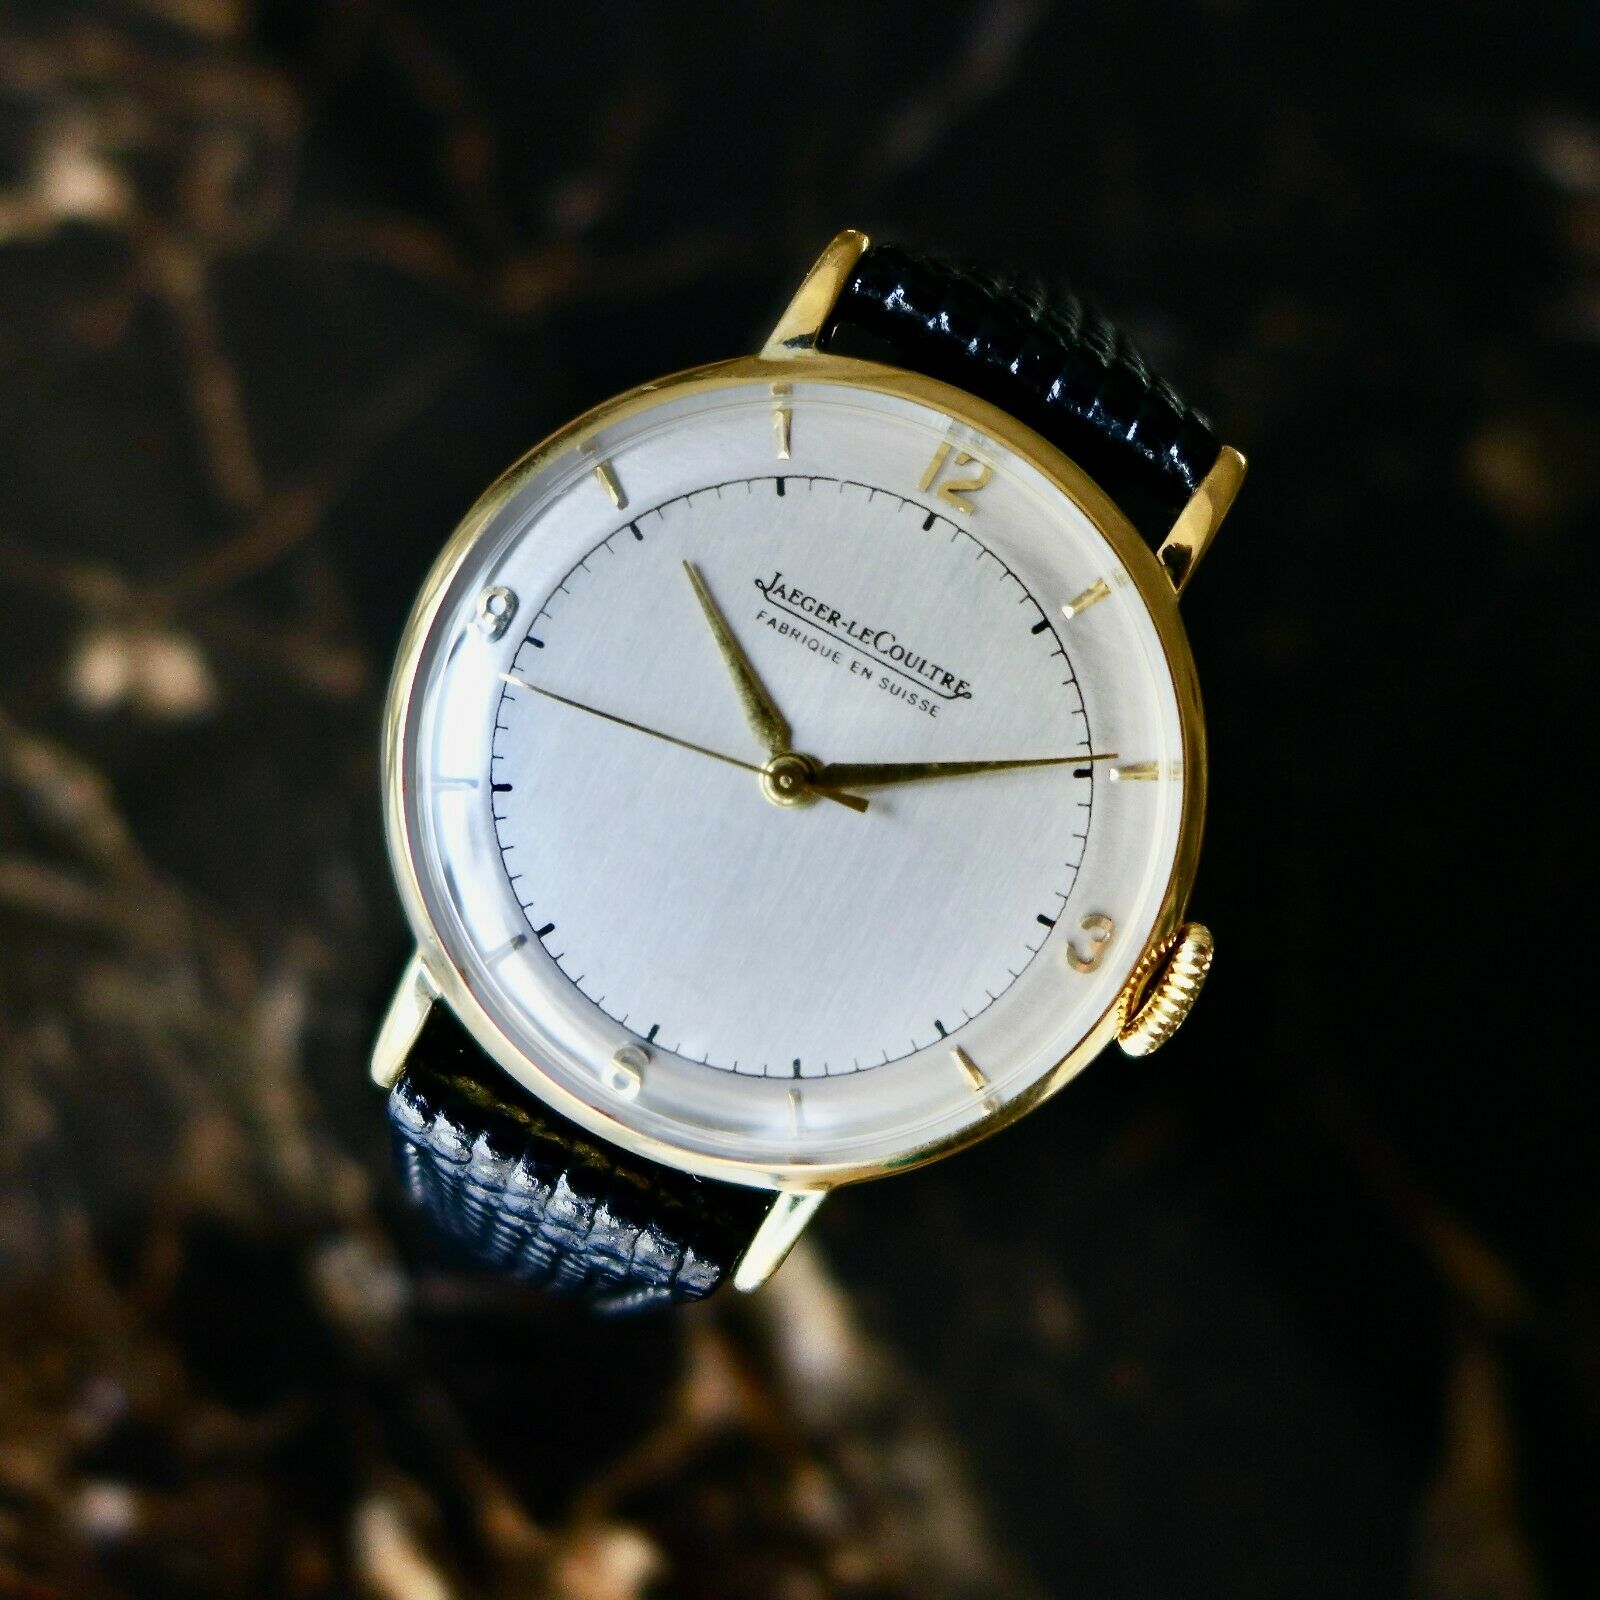 ジャガールクルト/LECOULTRE/1940'sミリタリー/手巻/メンズ腕時計 - 時計